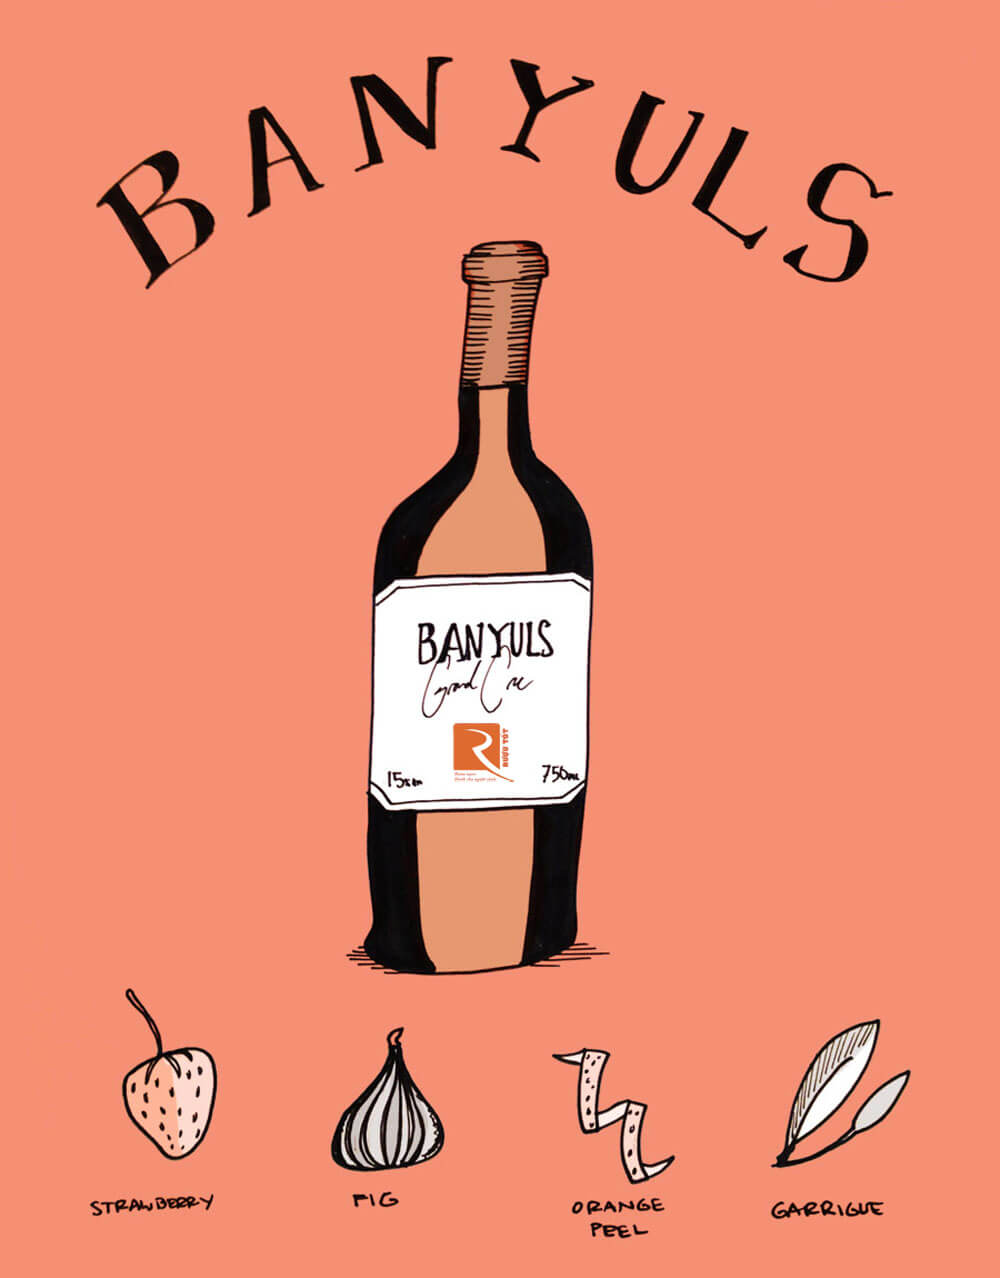 Loại rượu nằm ở biên giới giữa Pháp và Tây Ban Nha là Banyuls ở Roussillon